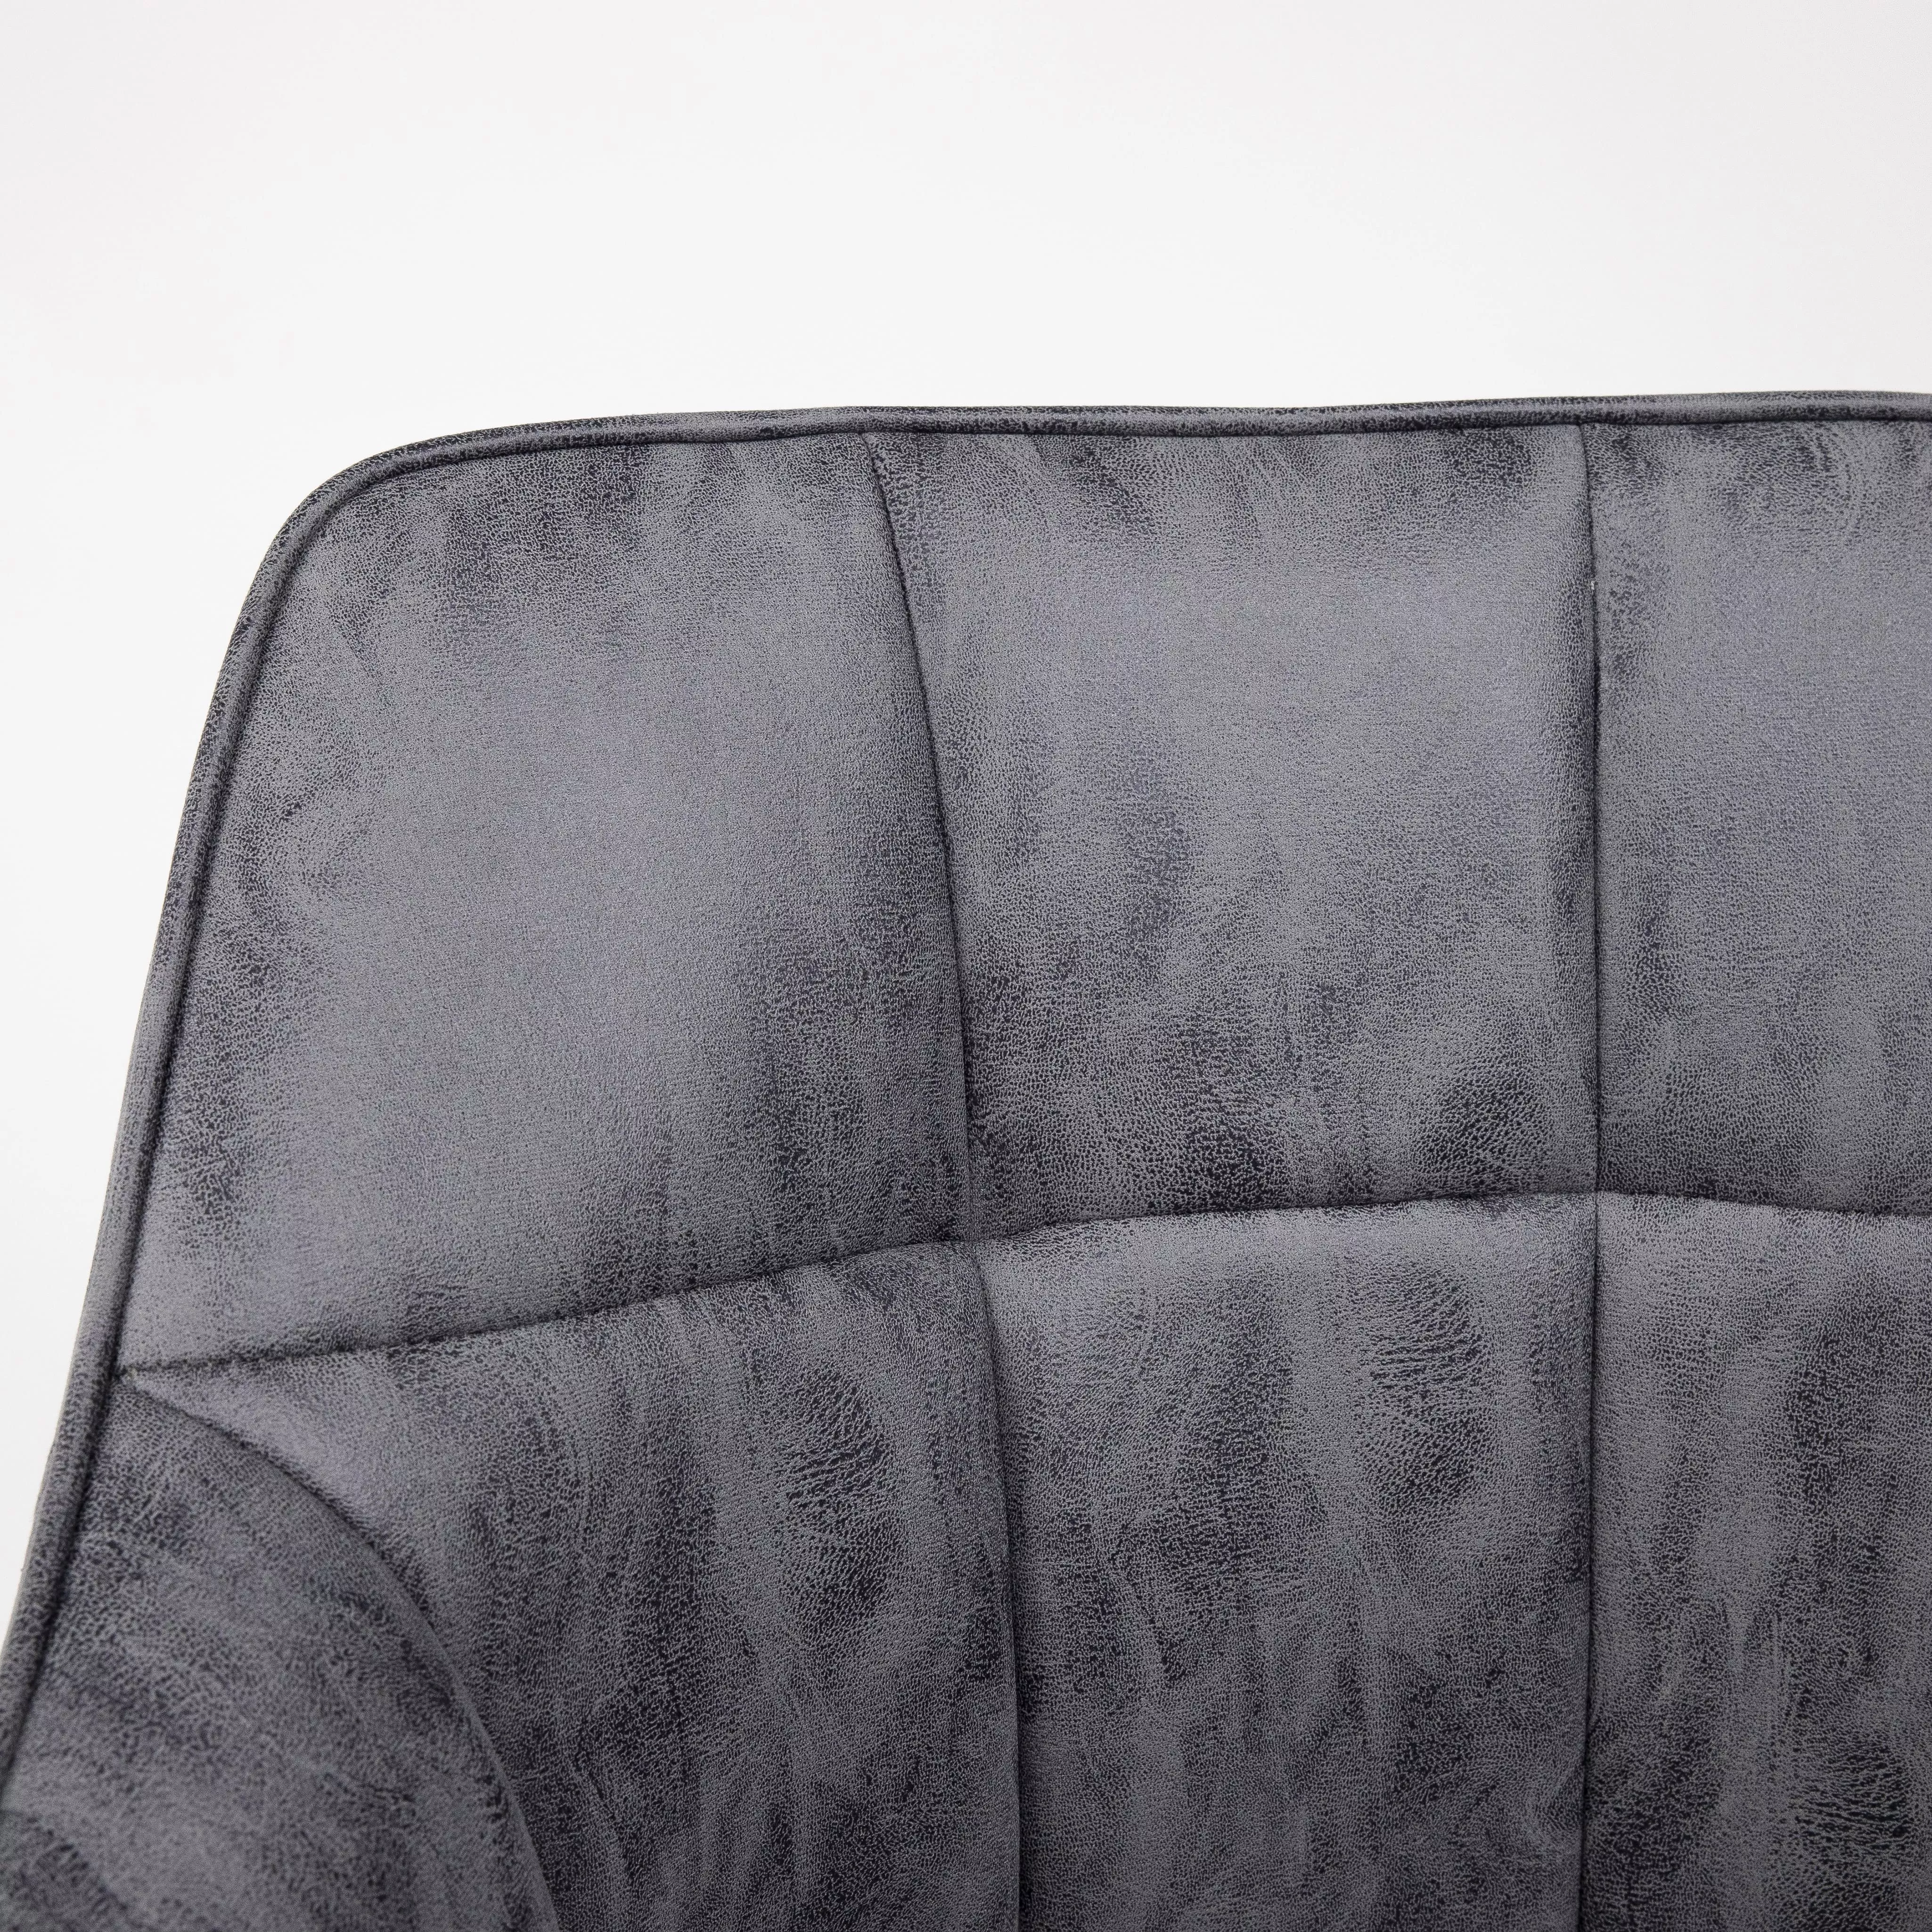 Кресло компьютерное Barren винтажный серый ткань 83451